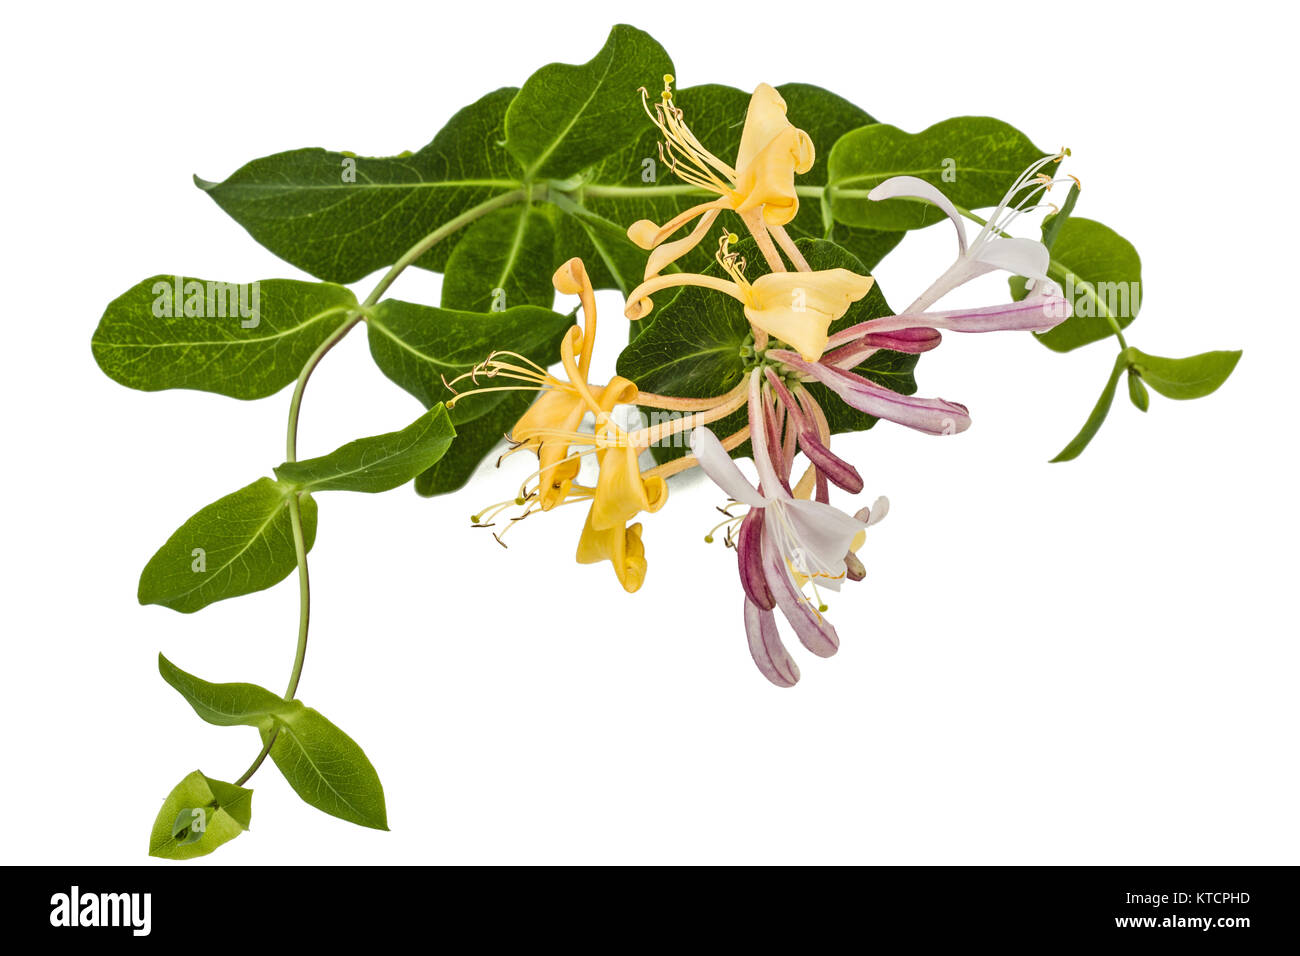 Flowers of honeysuckle, lat. Lonicera caprifolium, isolated on white background Stock Photo